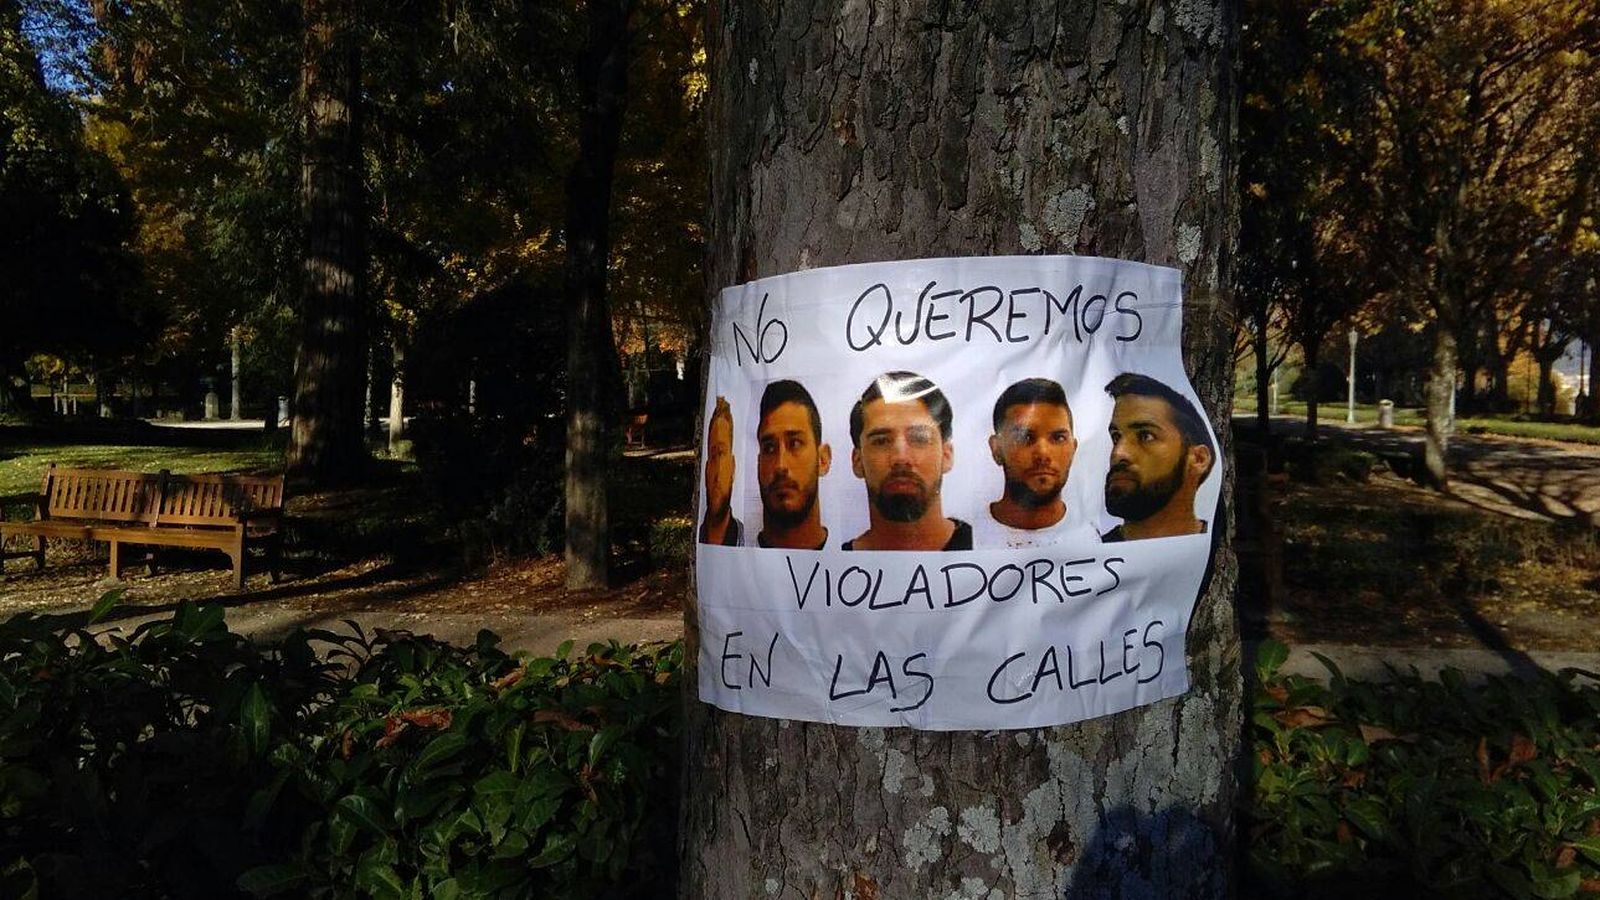 Foto: Cartel en Pamplona con los rostros de los cinco integrantes de La Manada junto al lema "No queremos violadores en las calles". (EC)